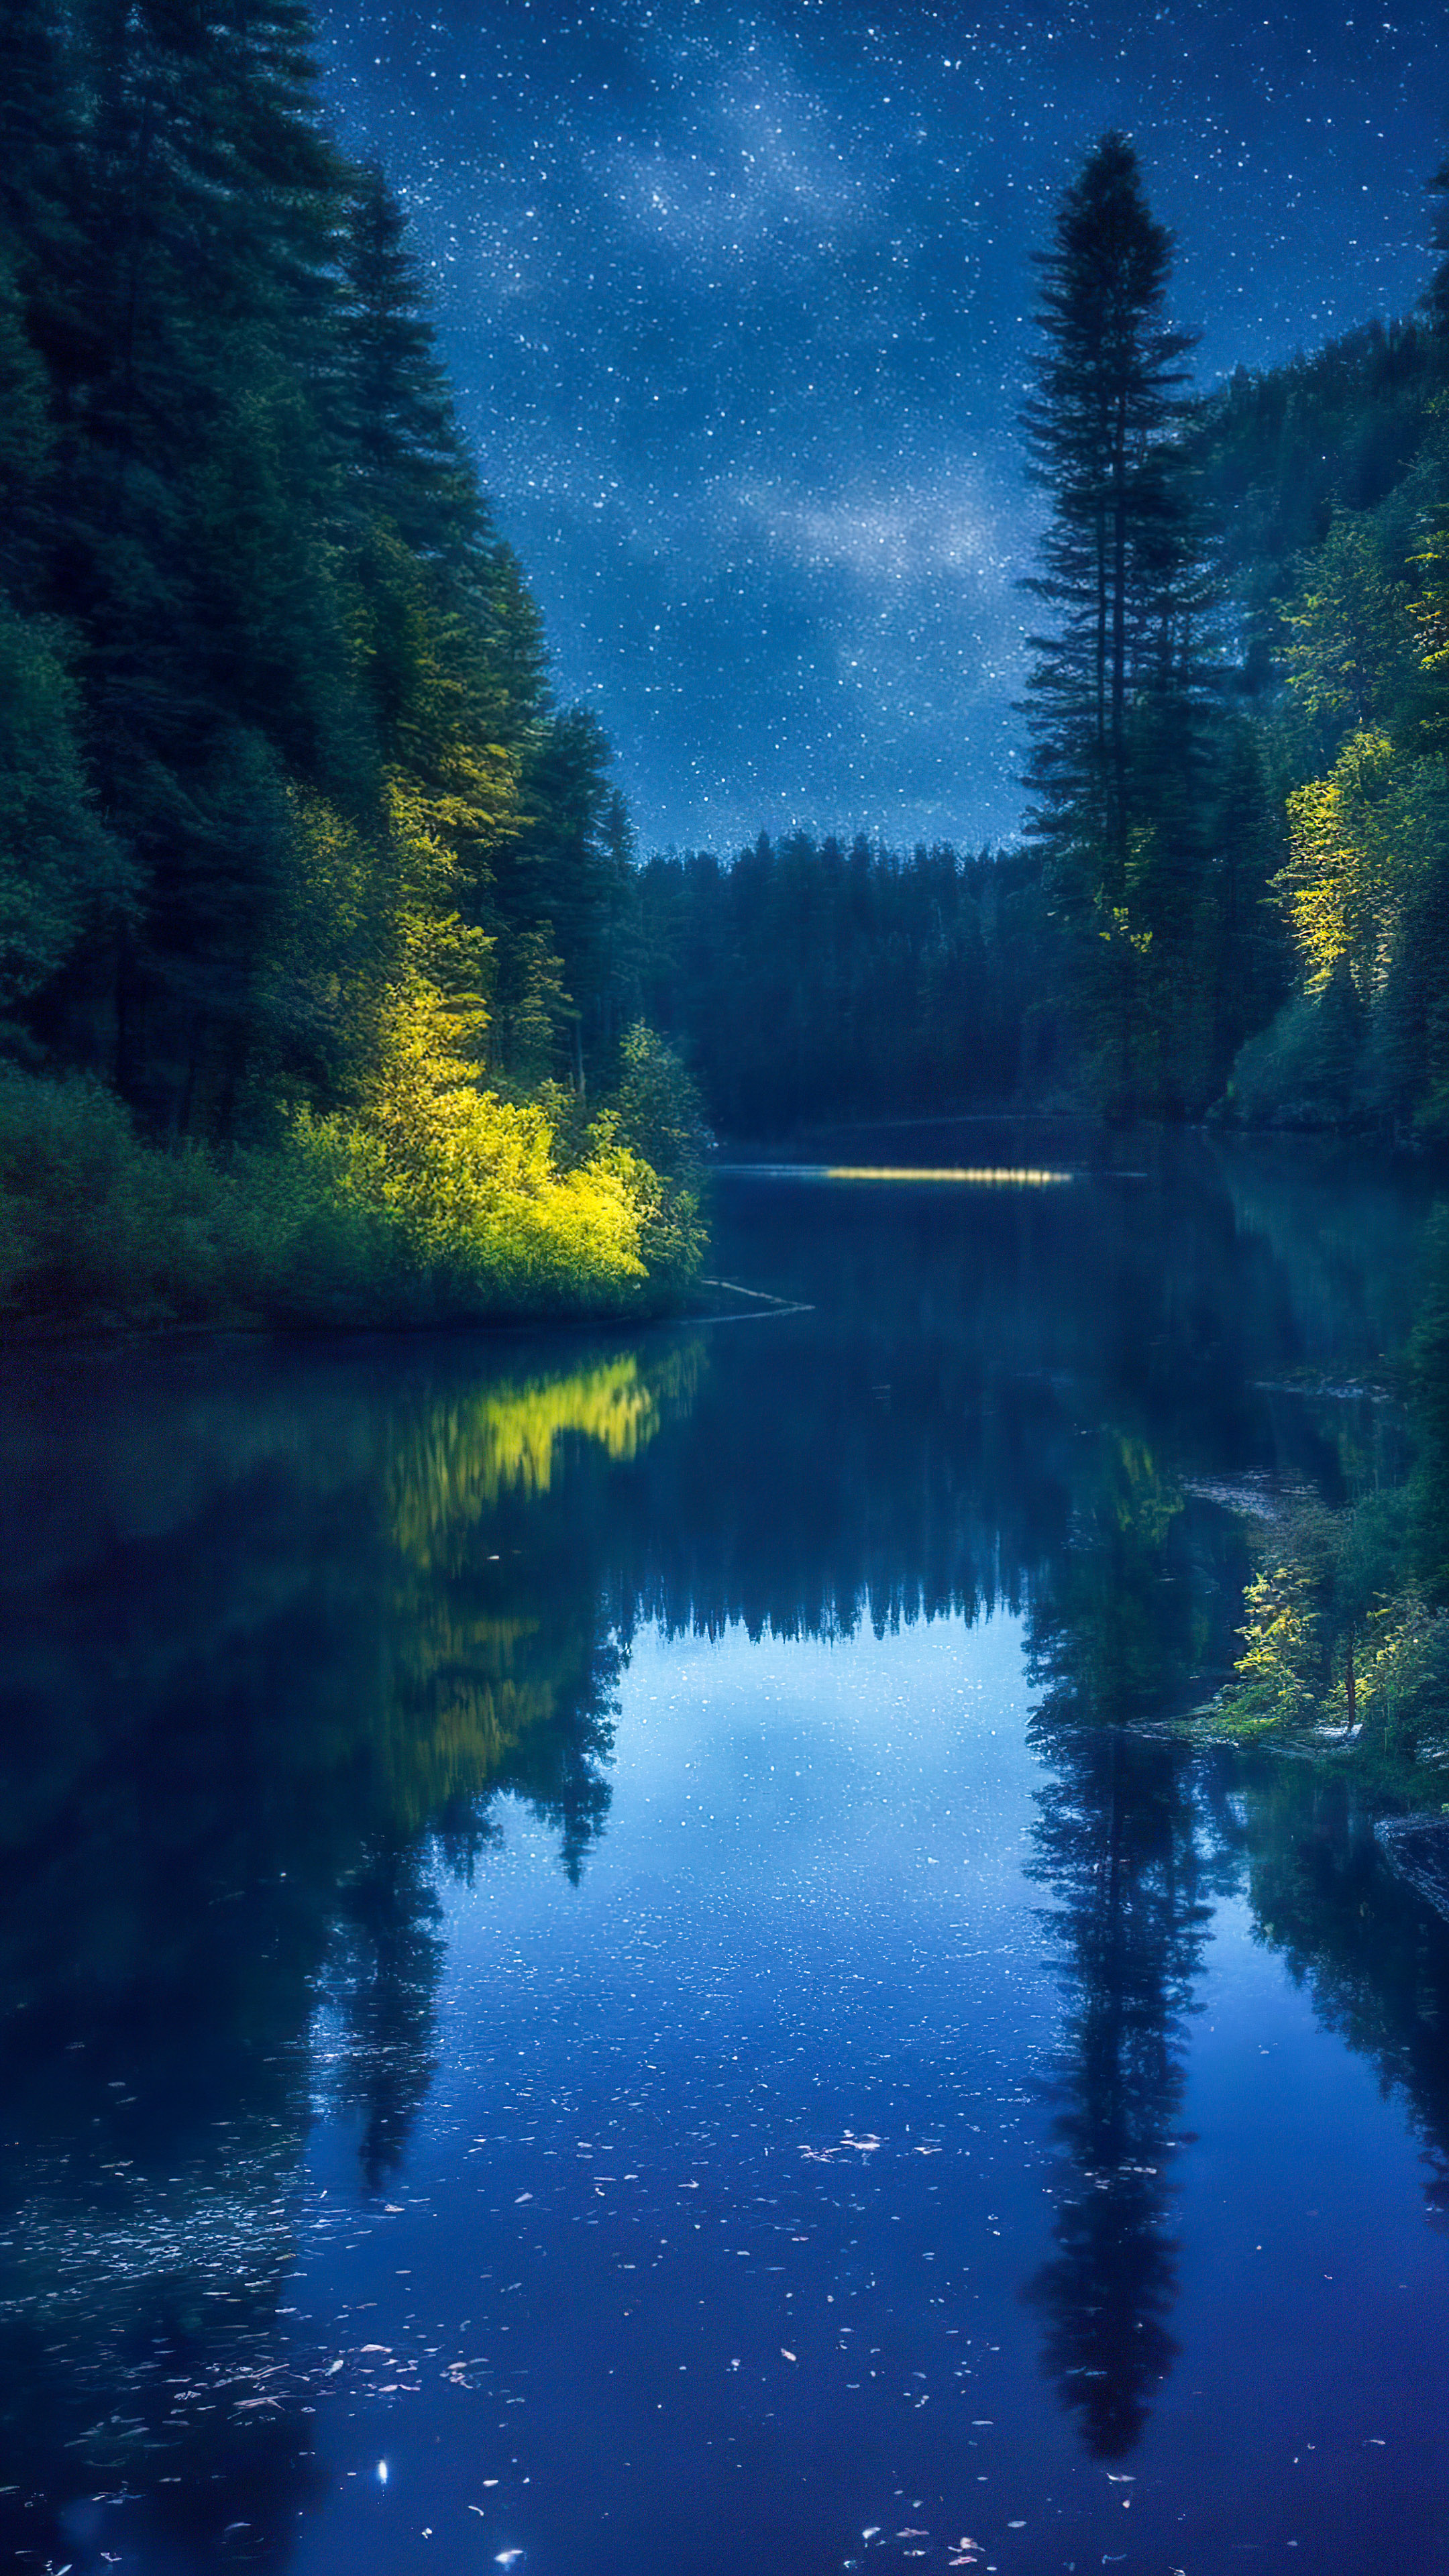 Perdez-vous dans la sérénité avec notre fond d'écran pour mobile, présentant une rivière paisible serpentant à travers une forêt dense la nuit, reflétant le ciel nocturne étincelant.